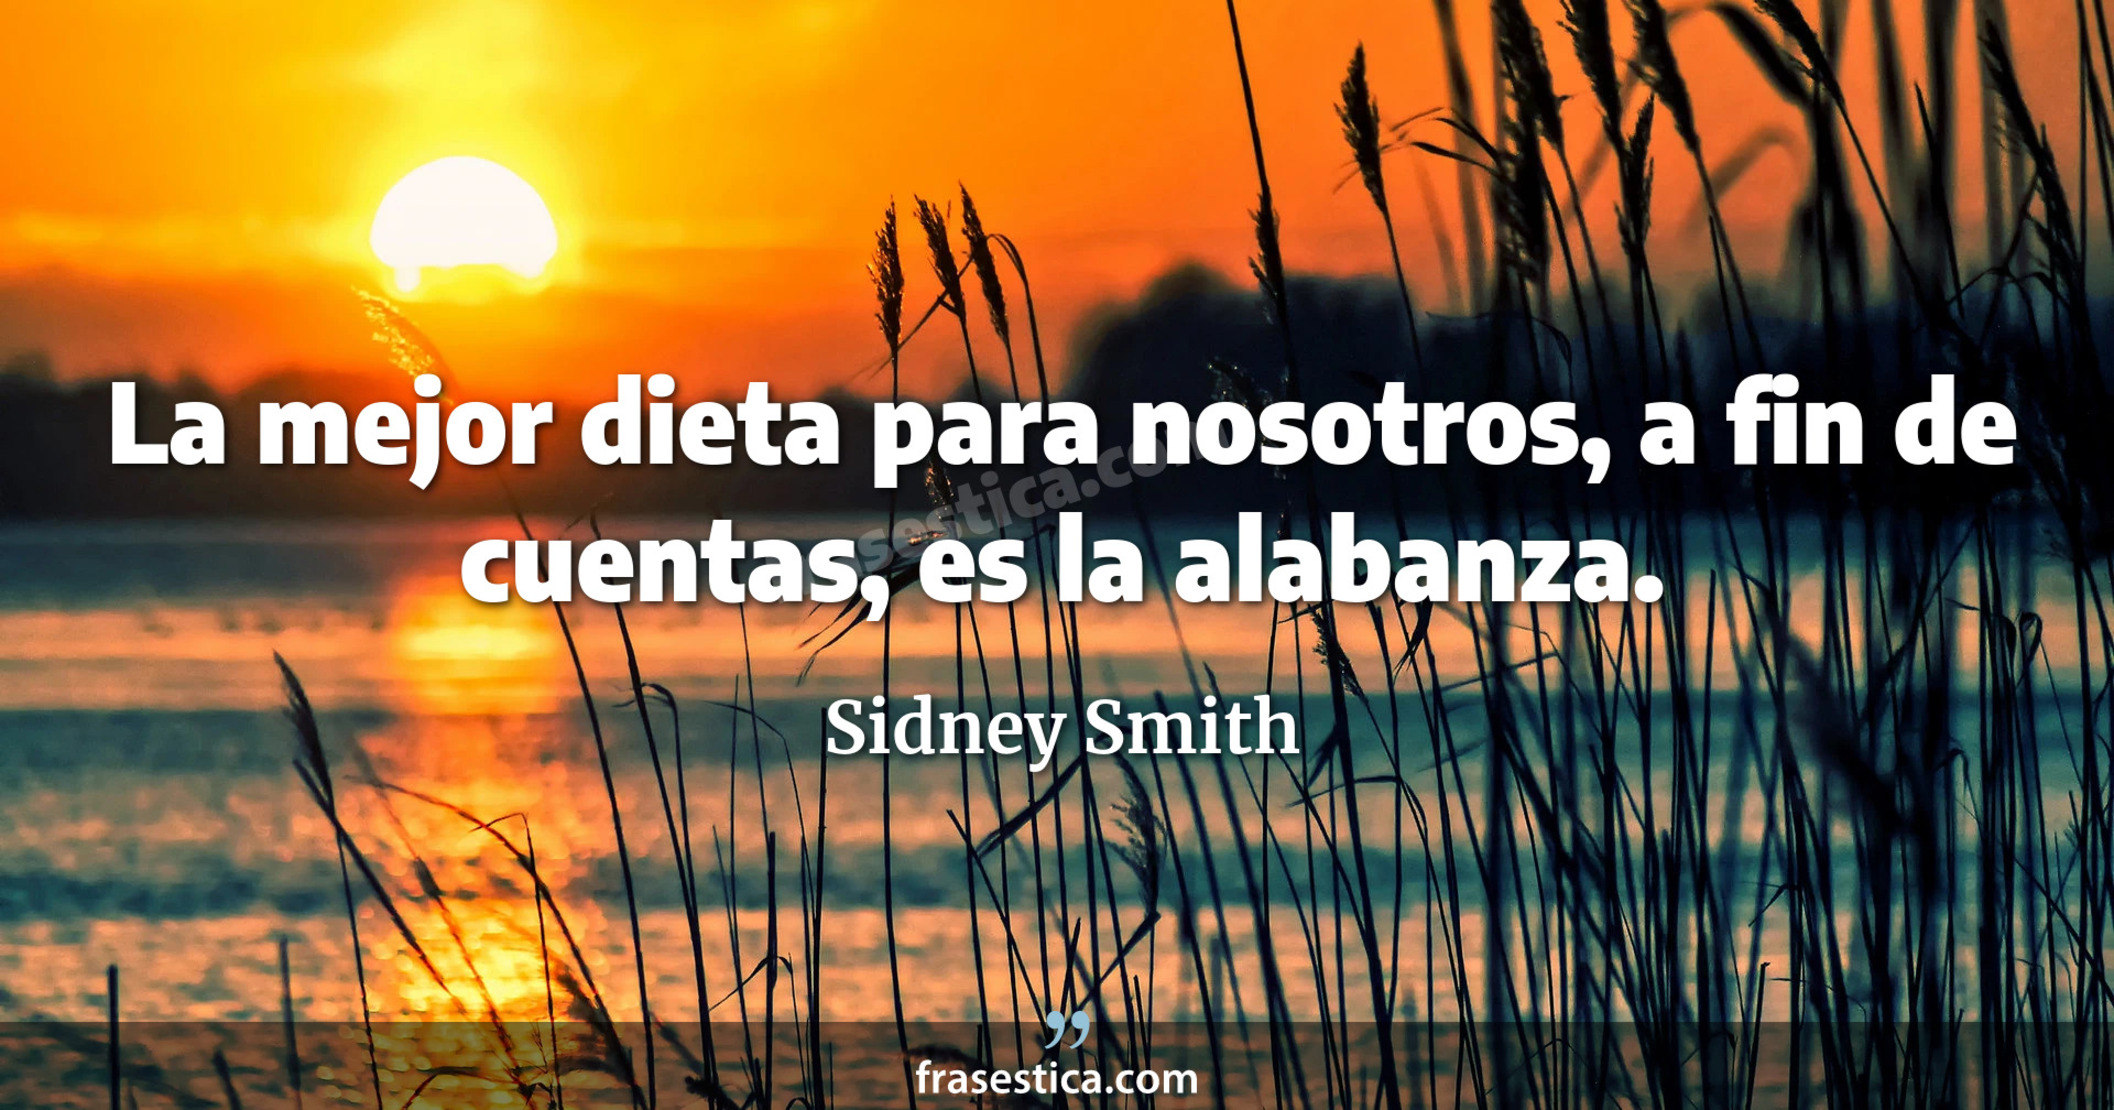 La mejor dieta para nosotros, a fin de cuentas, es la alabanza. - Sidney Smith